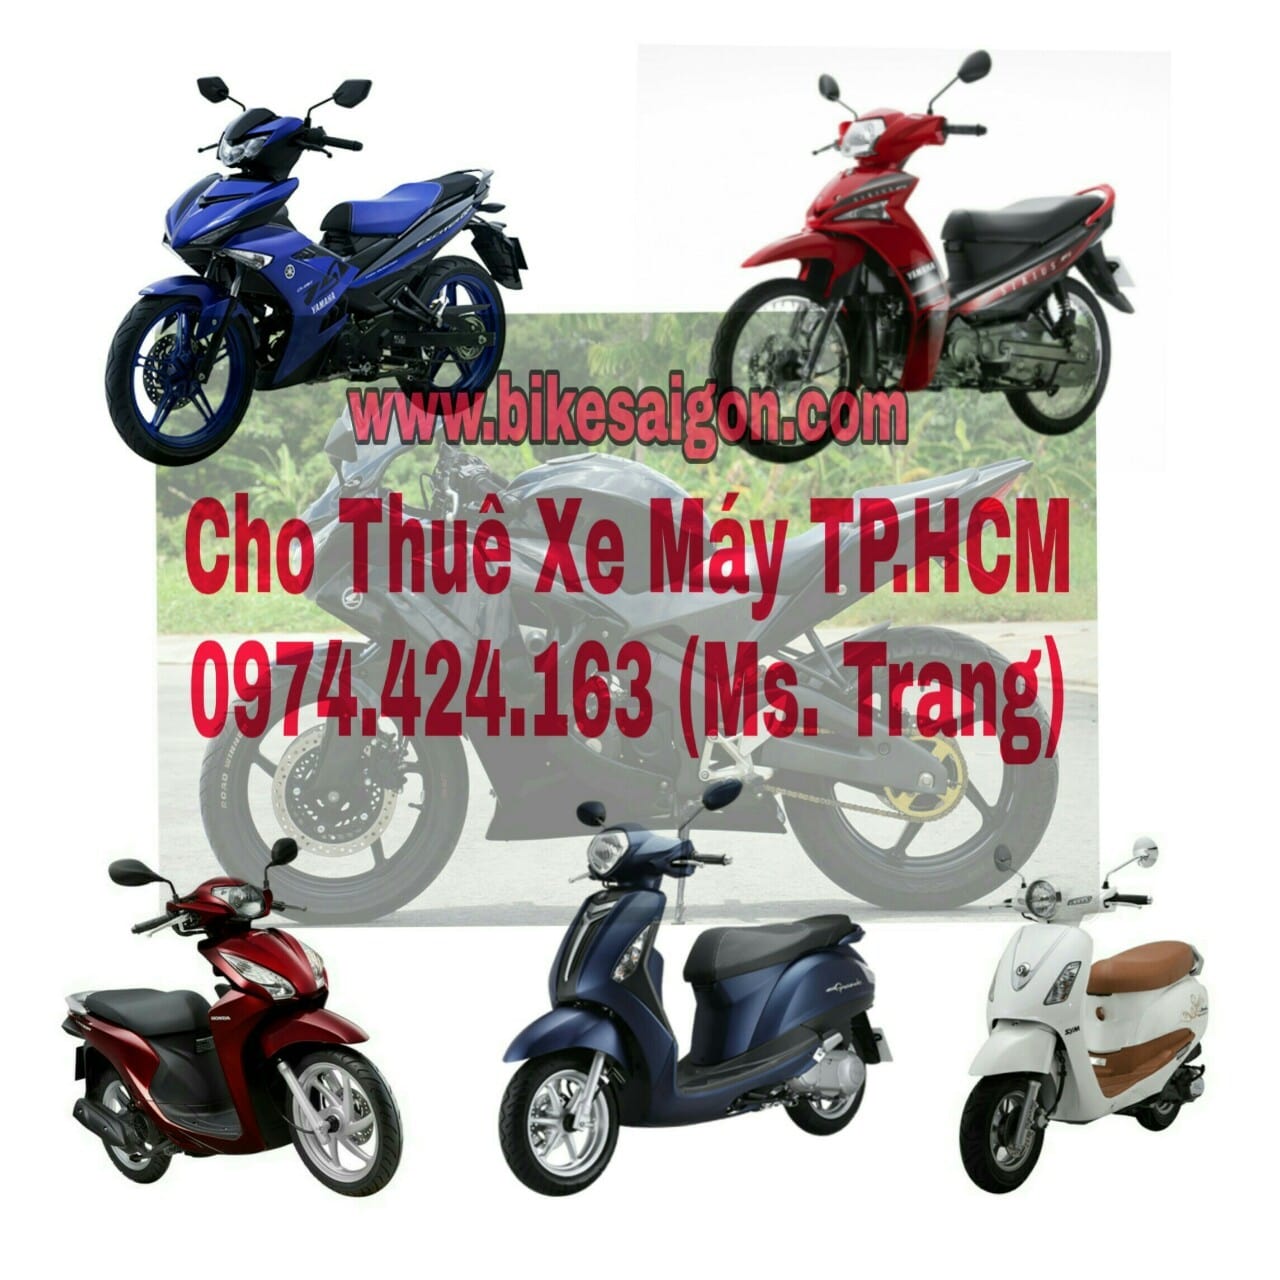 thuê xe máy quận Tân Bình sài gòn